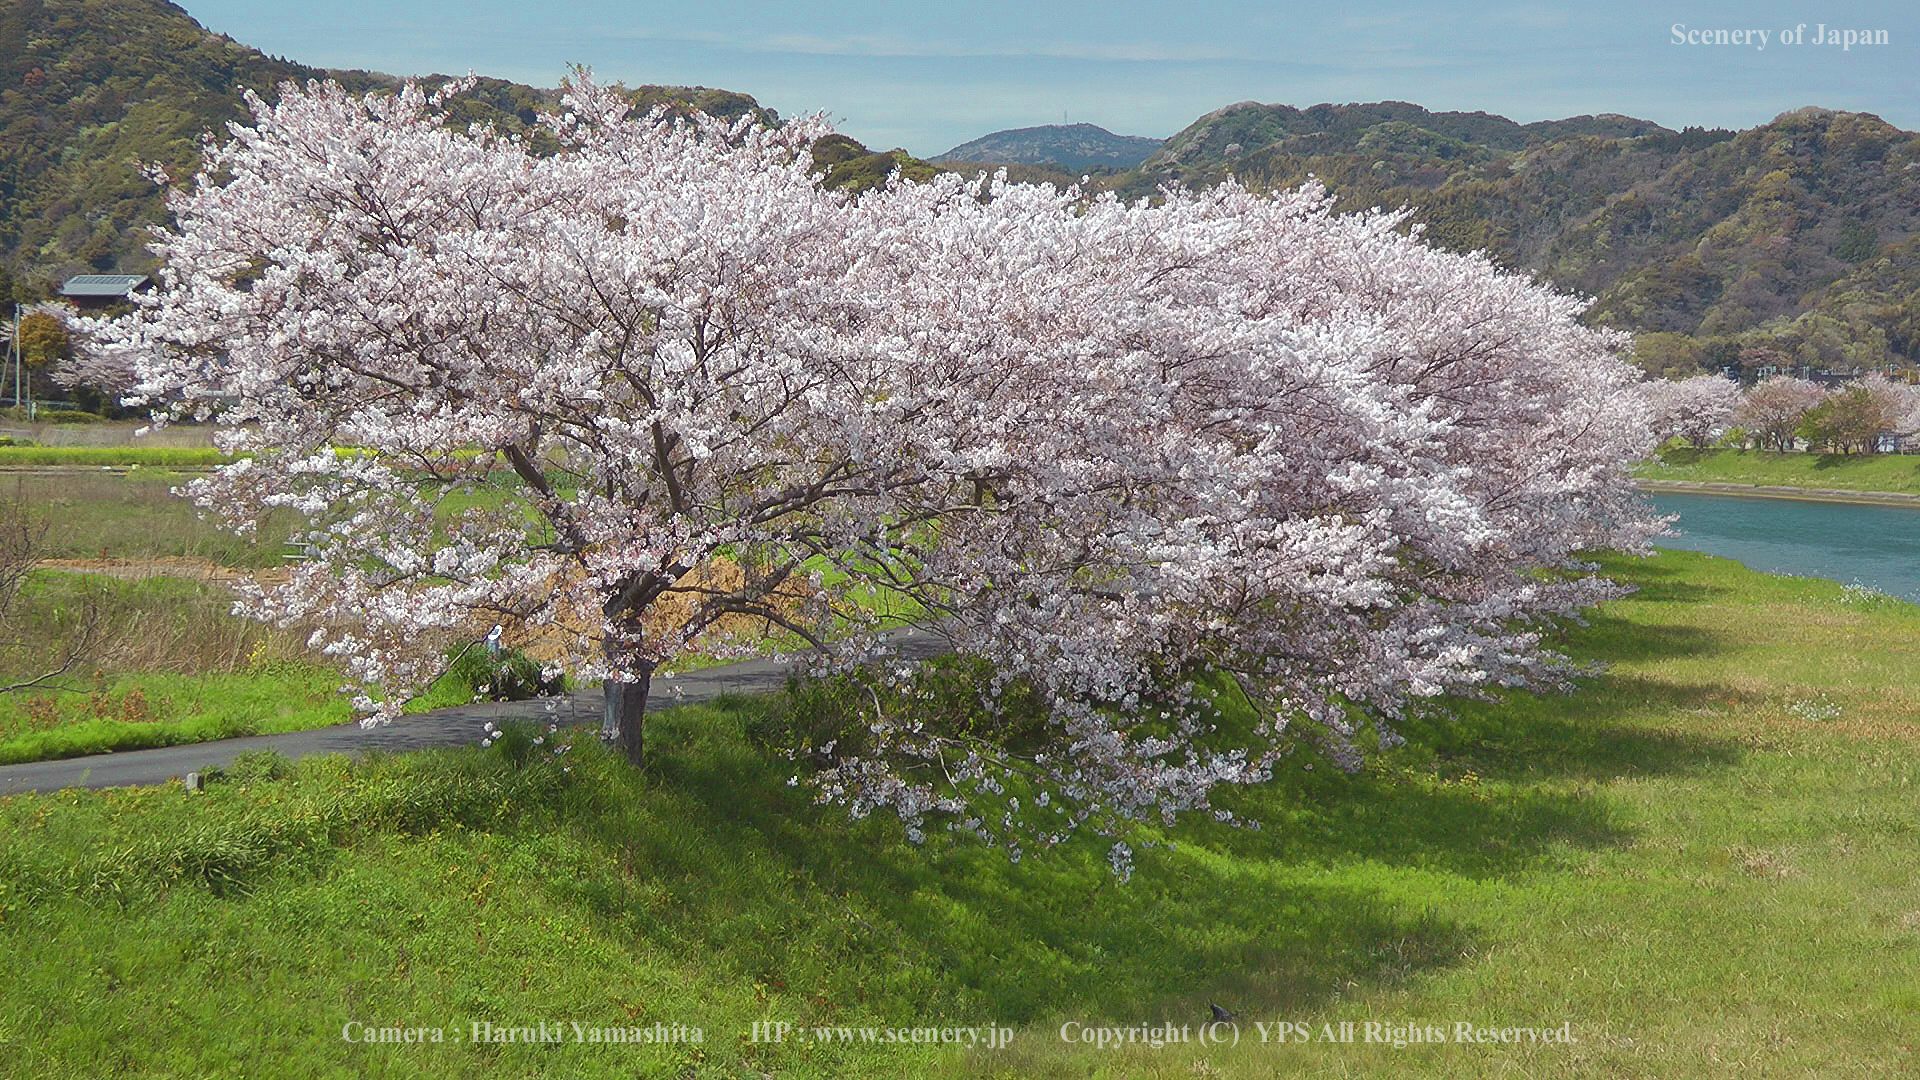 春の壁紙 画像 無料ダウンロード Scenery Of Japan